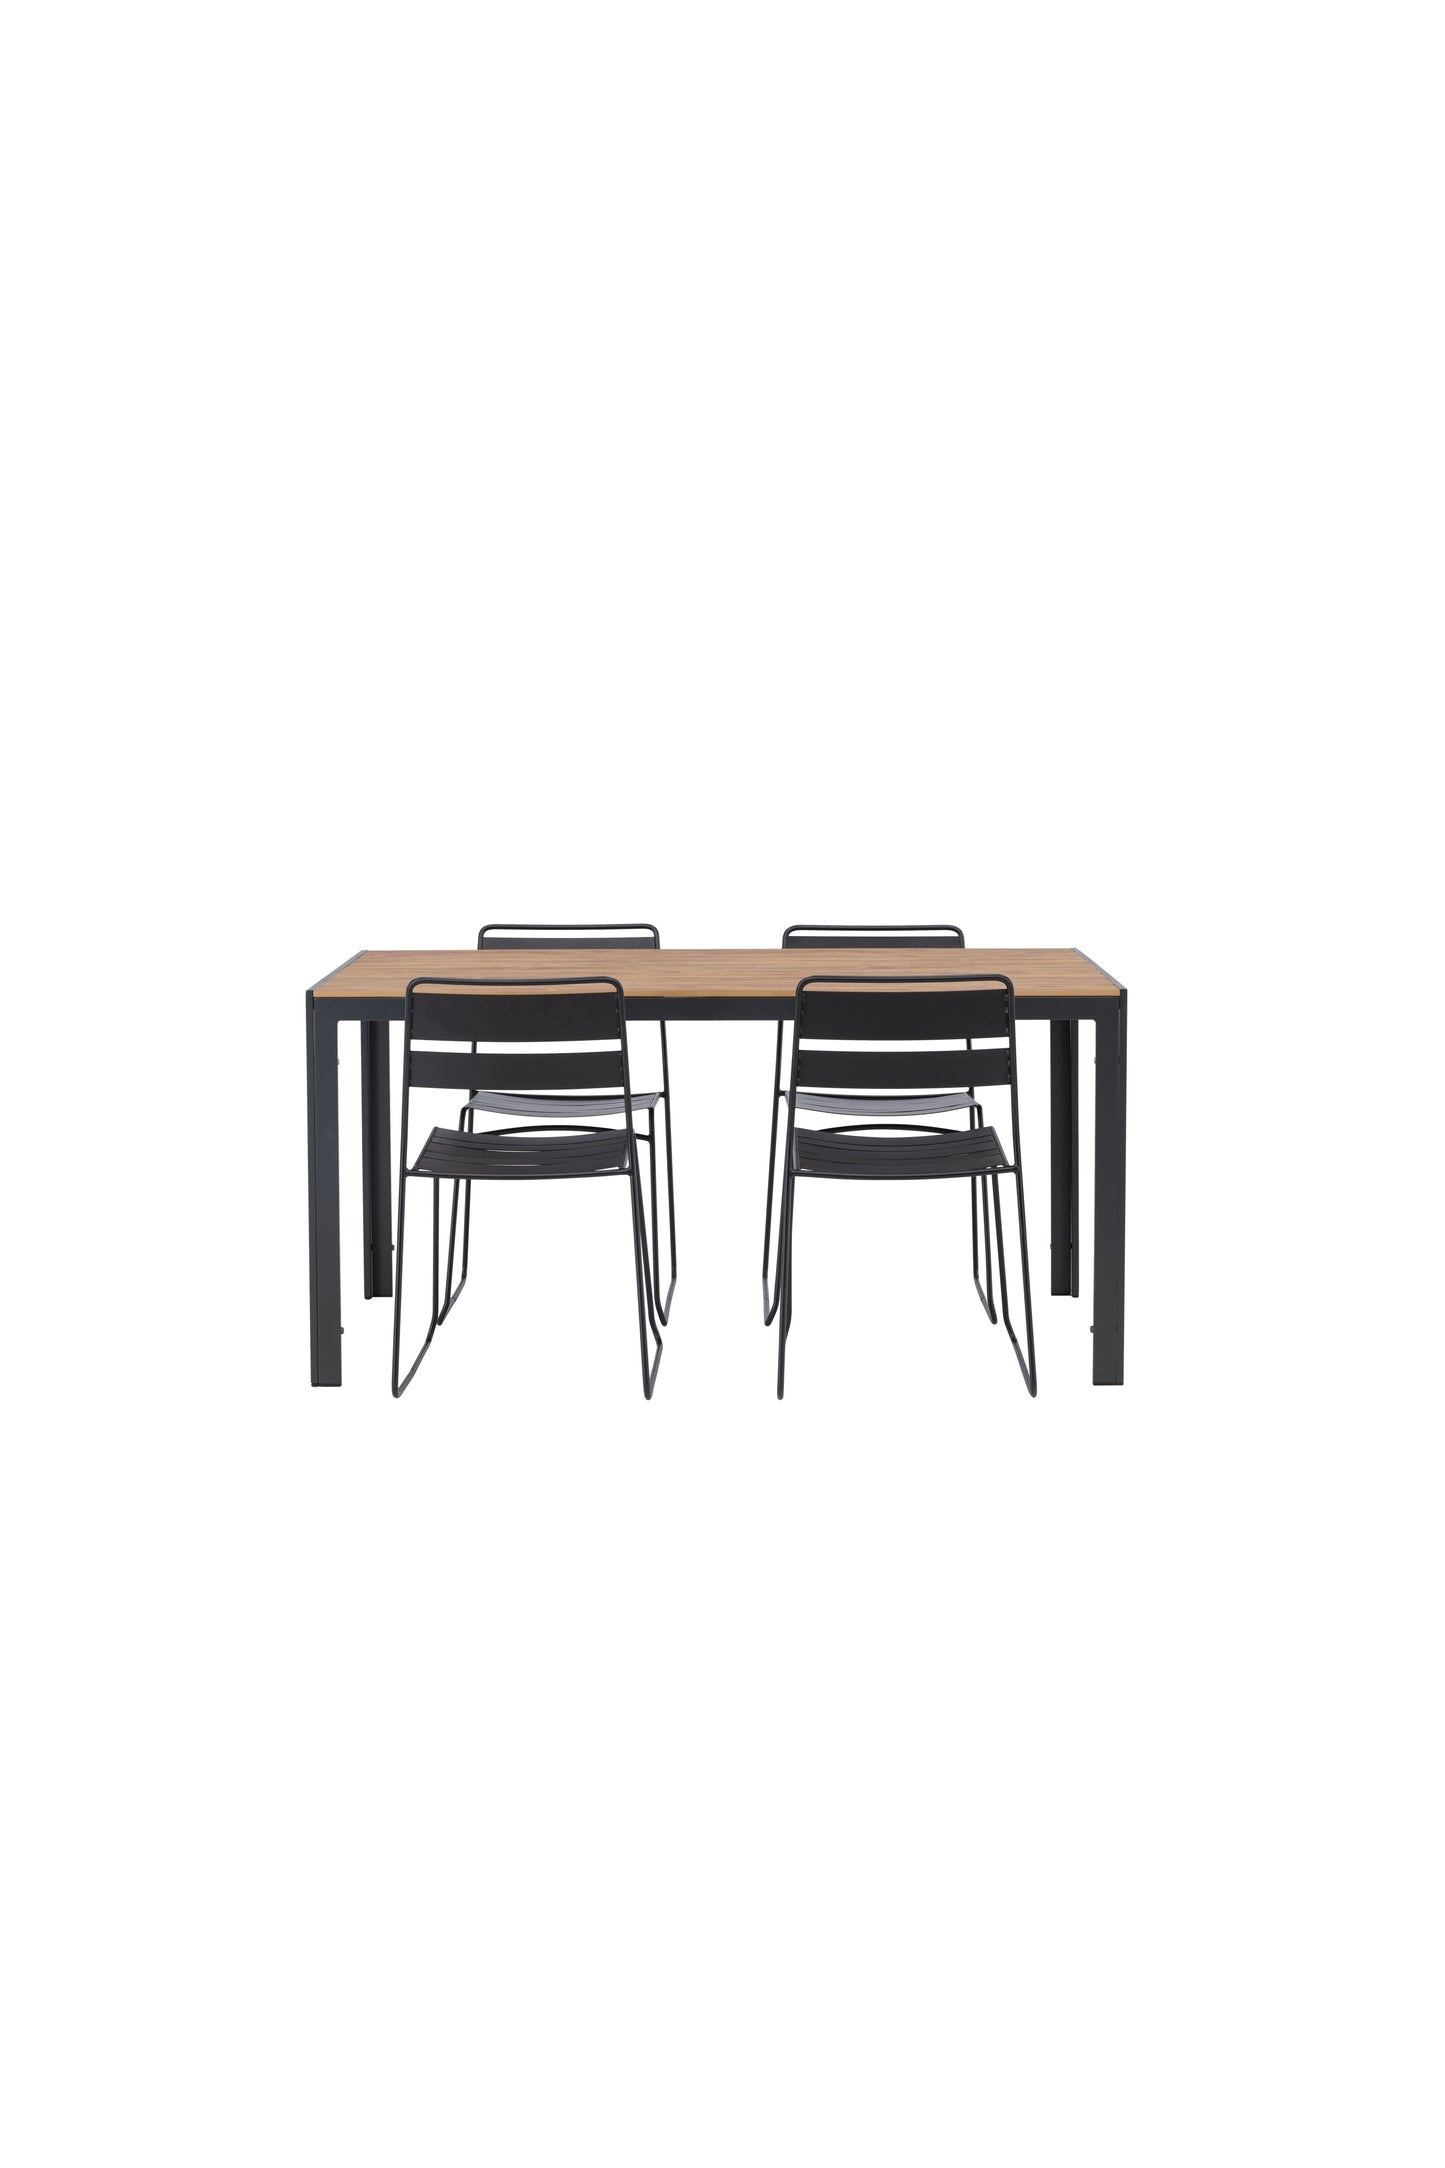 Break - Spisebord, Aluminium - Sort / Natur Rektangulær 90*150* + Lia Spisebordsstol - Sort